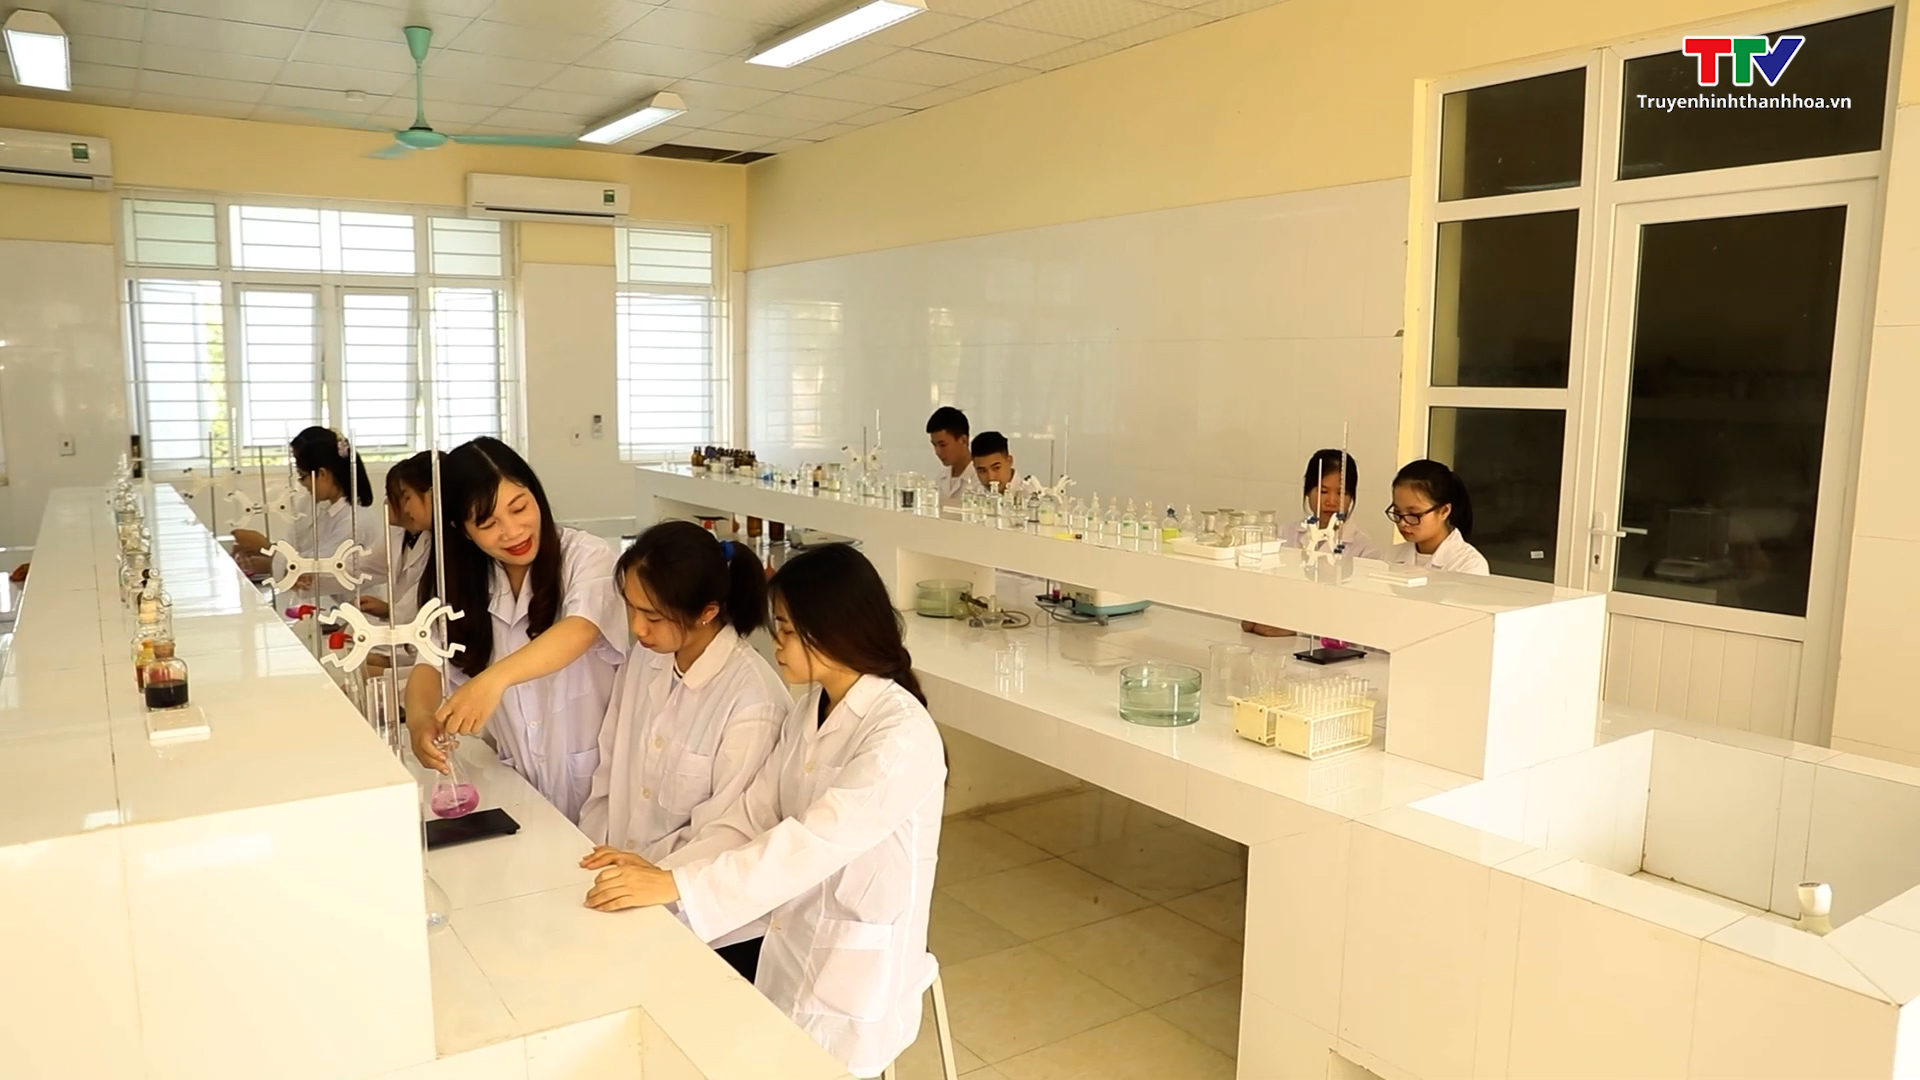 Tỉnh Thanh Hóa đạt thành tích cao tại Giải thưởng Sáng tạo Khoa học, công nghệ Việt Nam năm 2022 - Ảnh 4.